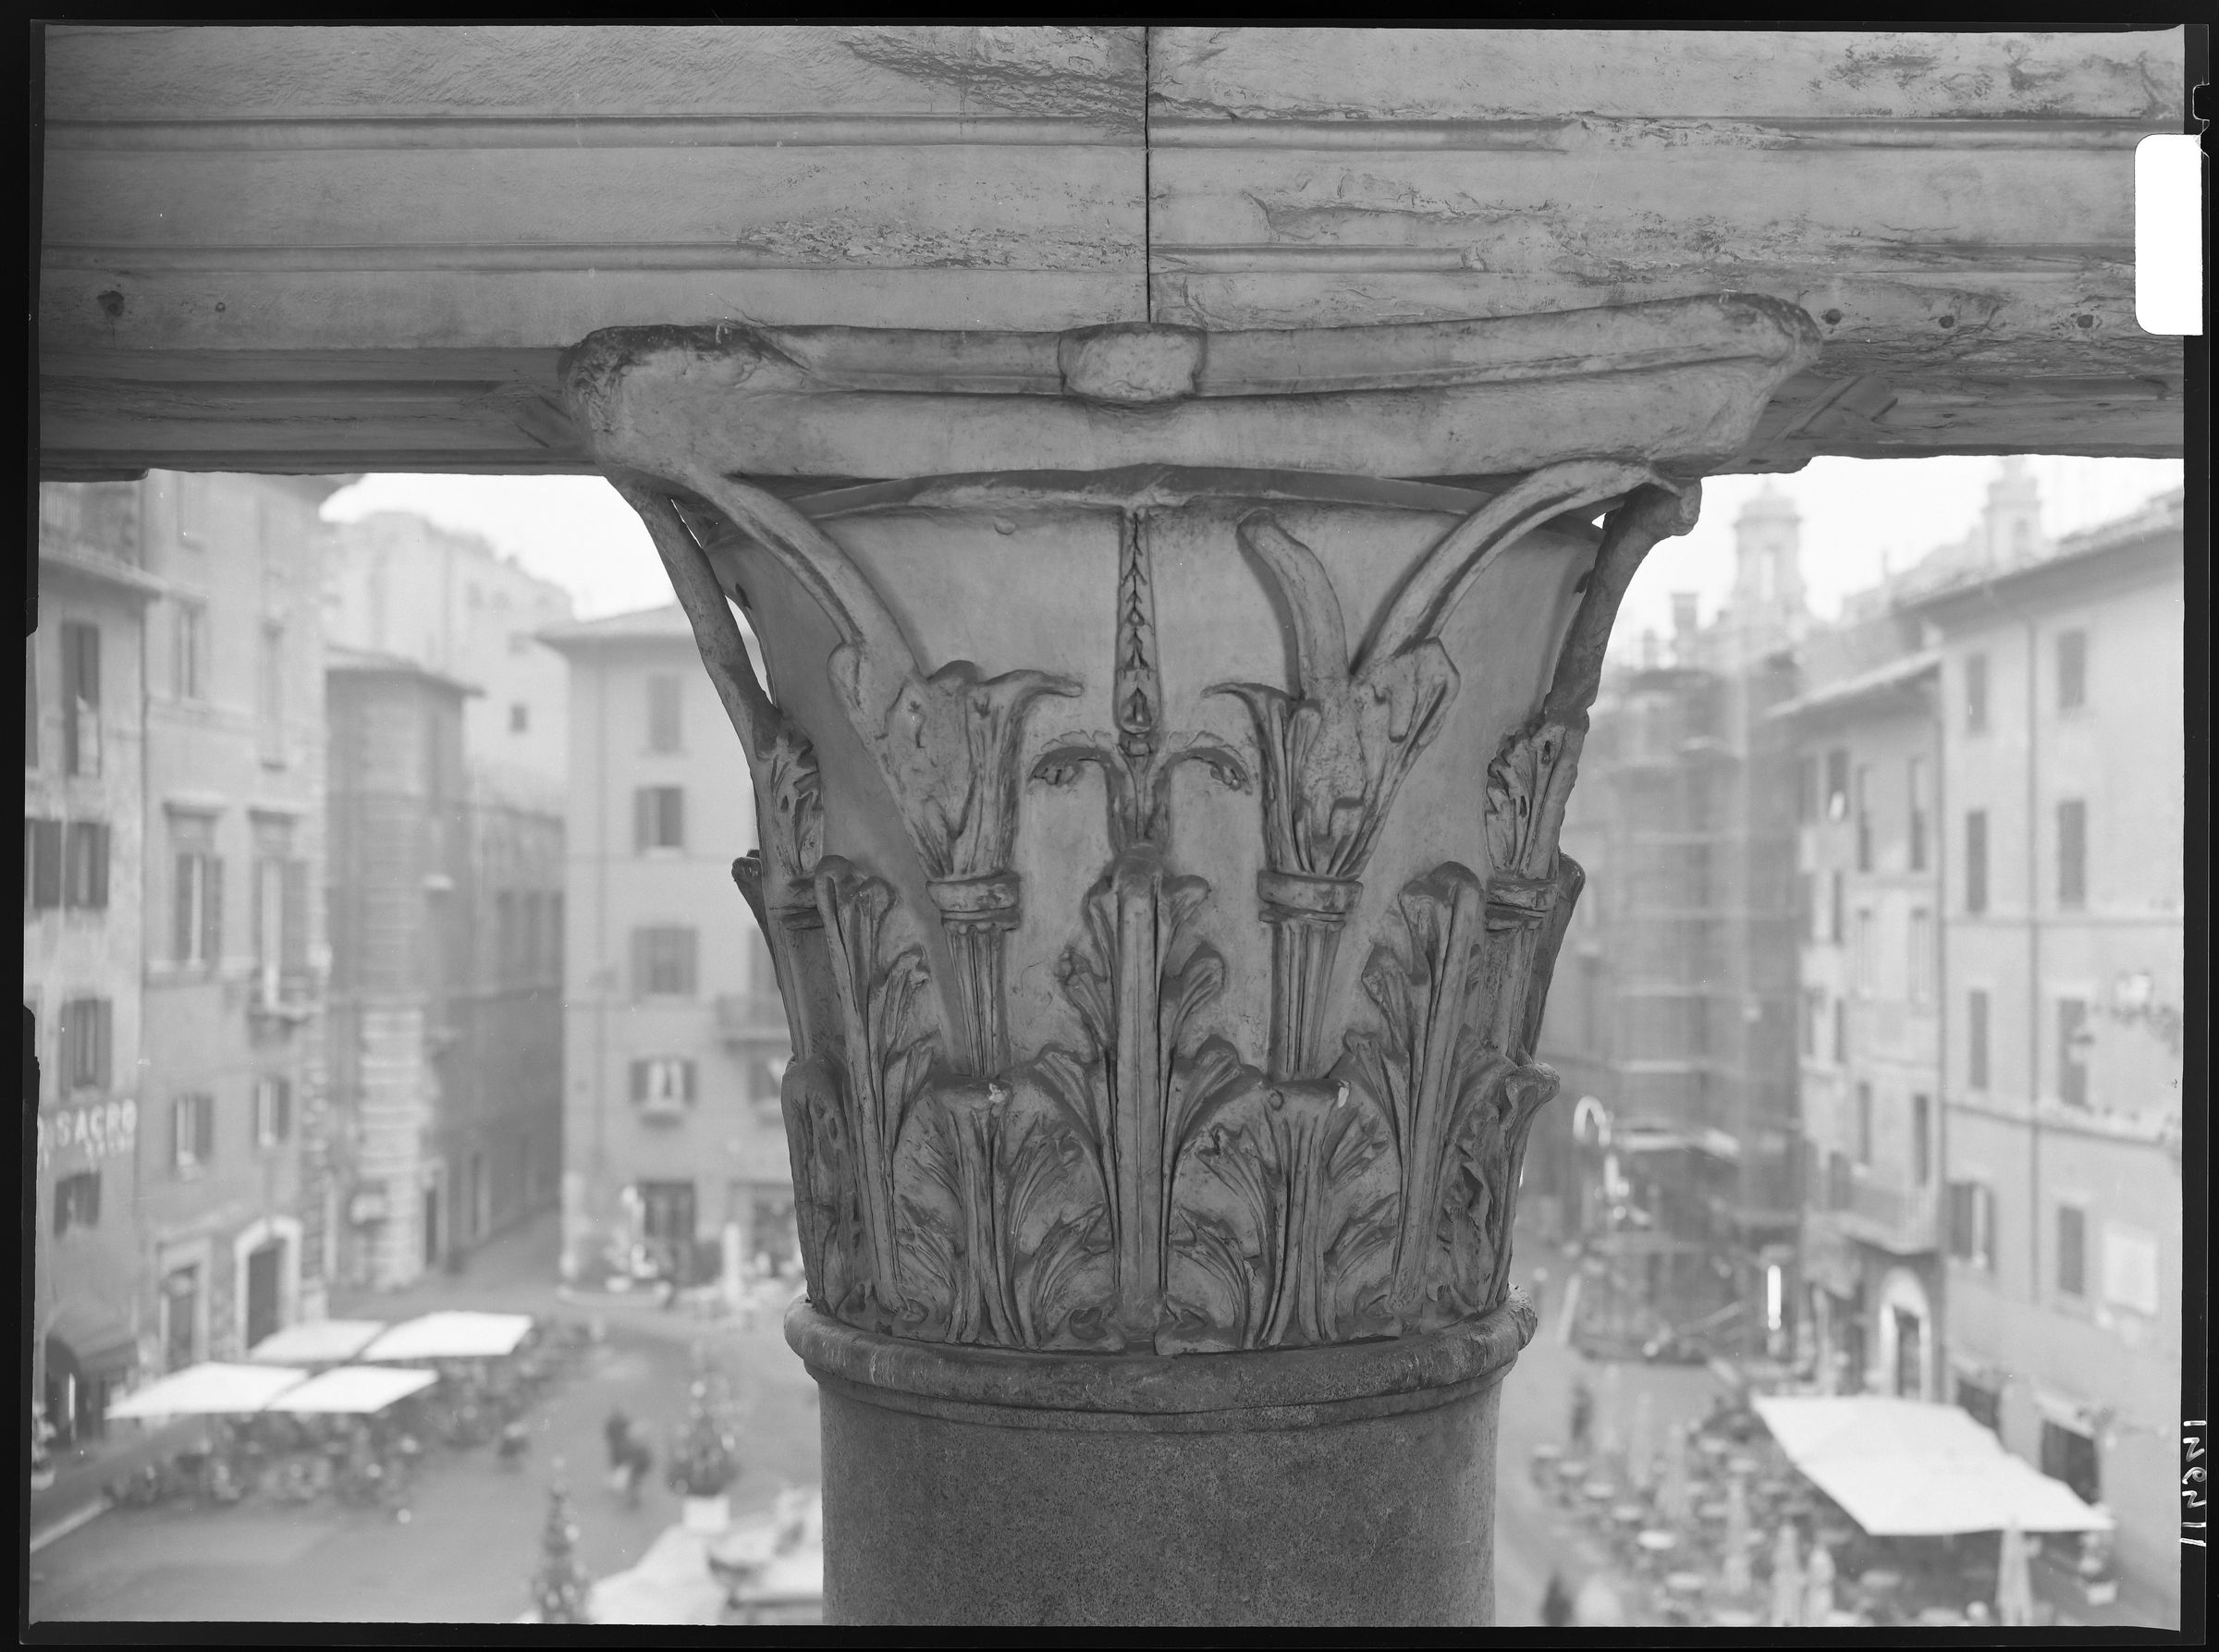 Fotografo non identificato, Roma - Pantheon,1951-2000, 18x24 cm, E114941